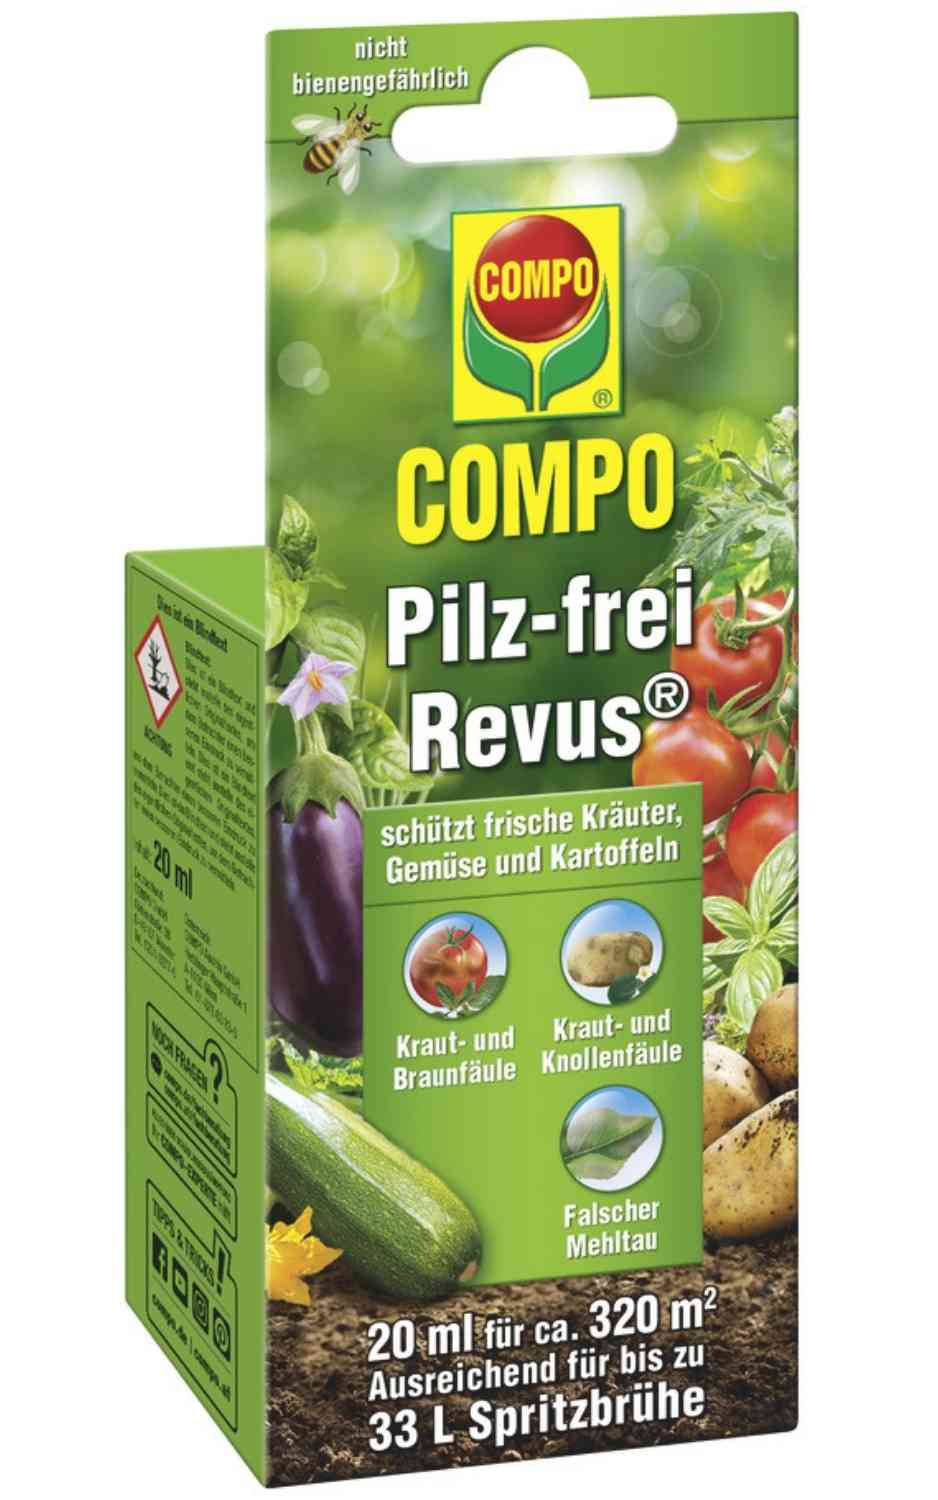 COMPO Pilz-frei Revus